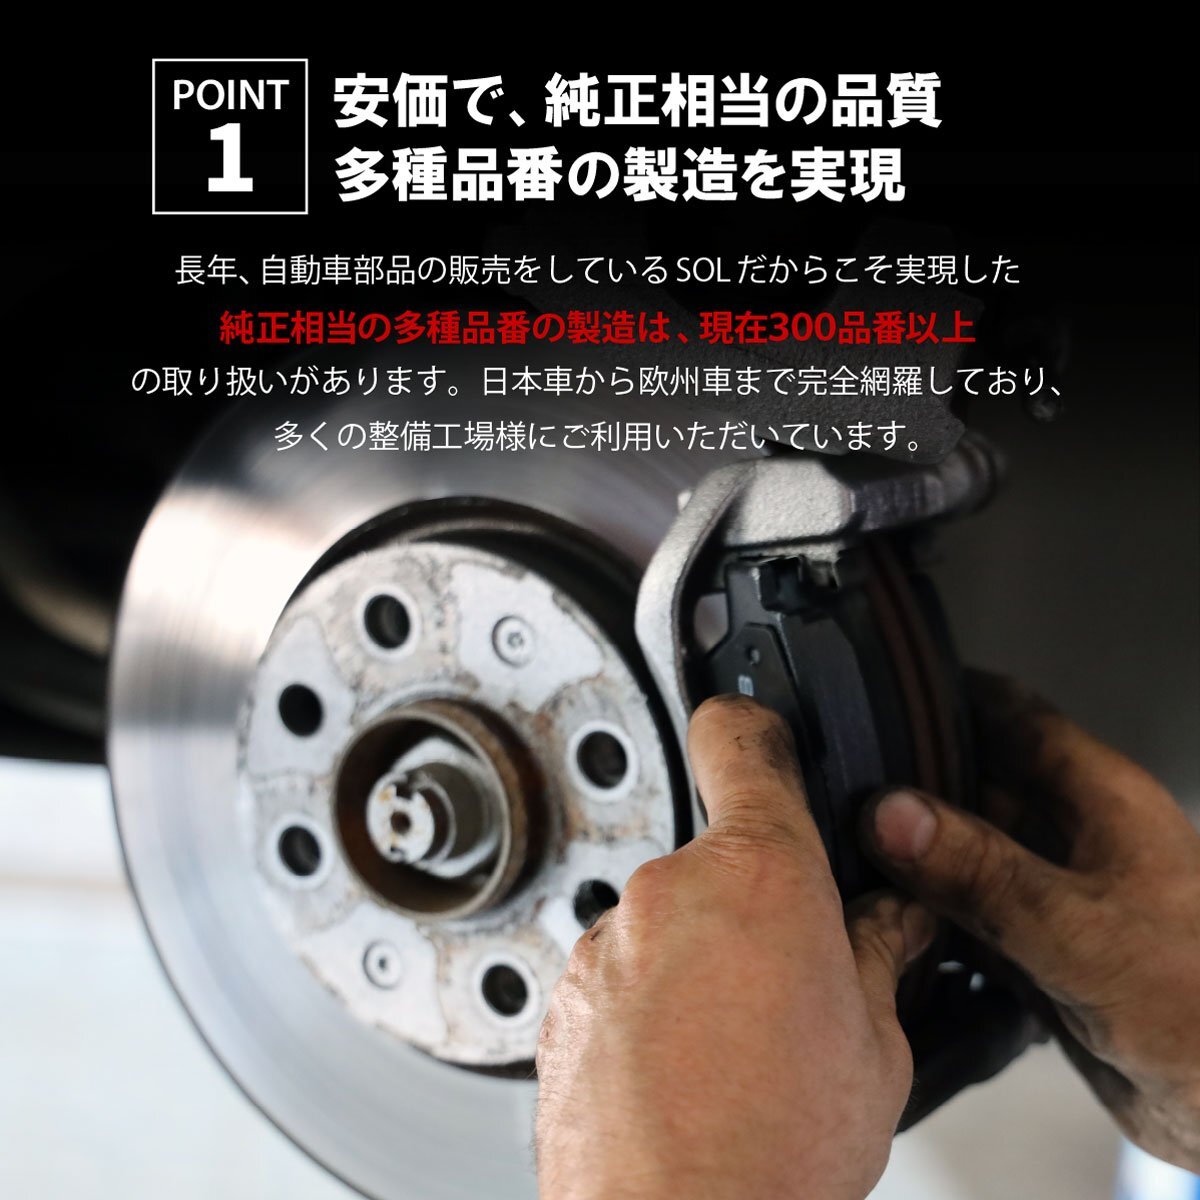  Daihatsu Atrai S201P S210P передние тормозные накладки левый и правый в комплекте отгрузка конечный срок 18 час марка машины особый дизайн 04465-B5021 04465-B5020 04465-B5050